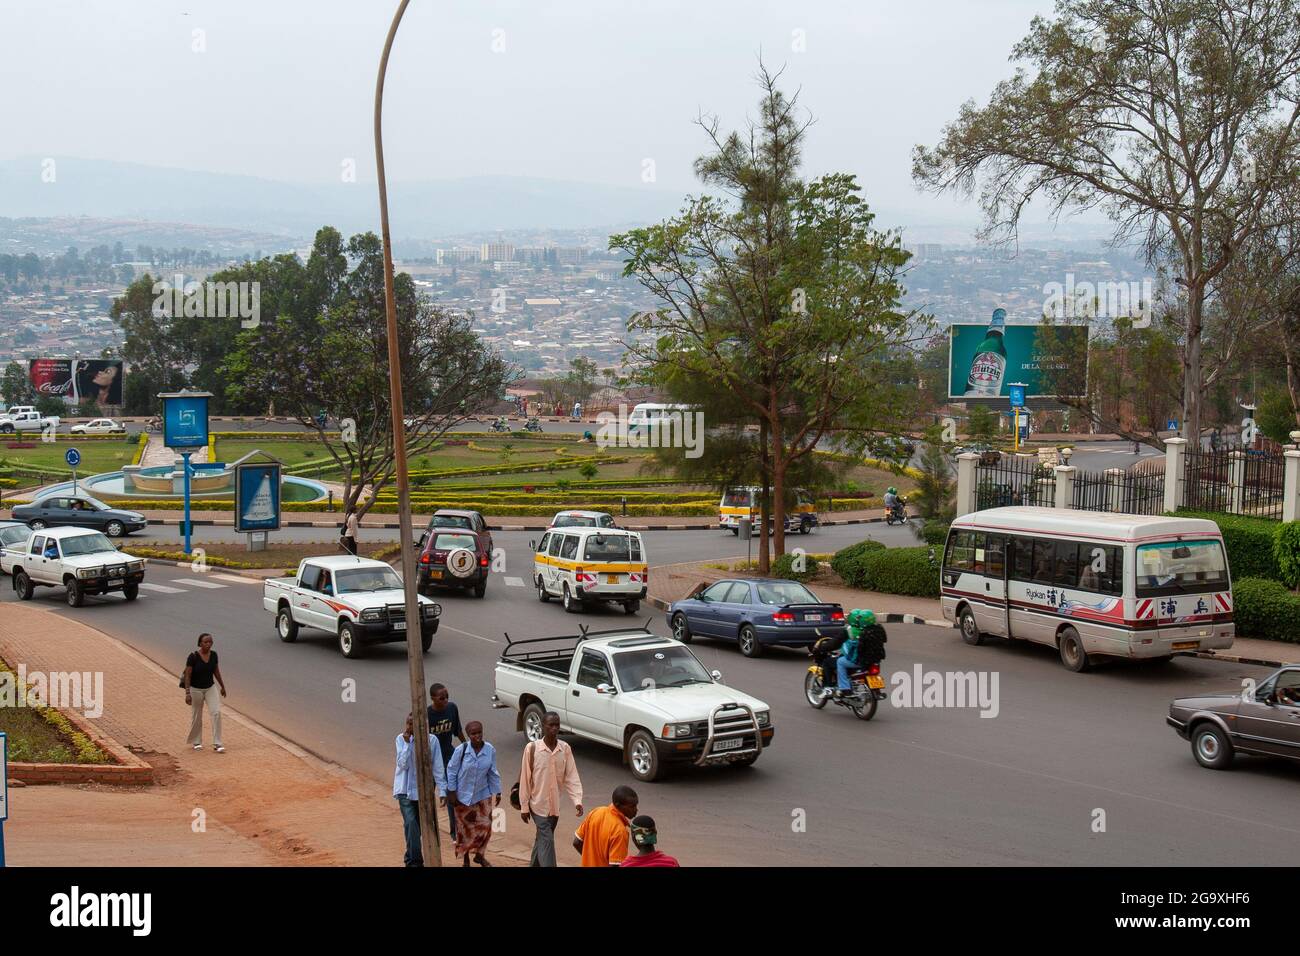 Kigali, Rwanda - august 8 2008 - traffic close to a roundabout Stock Photo